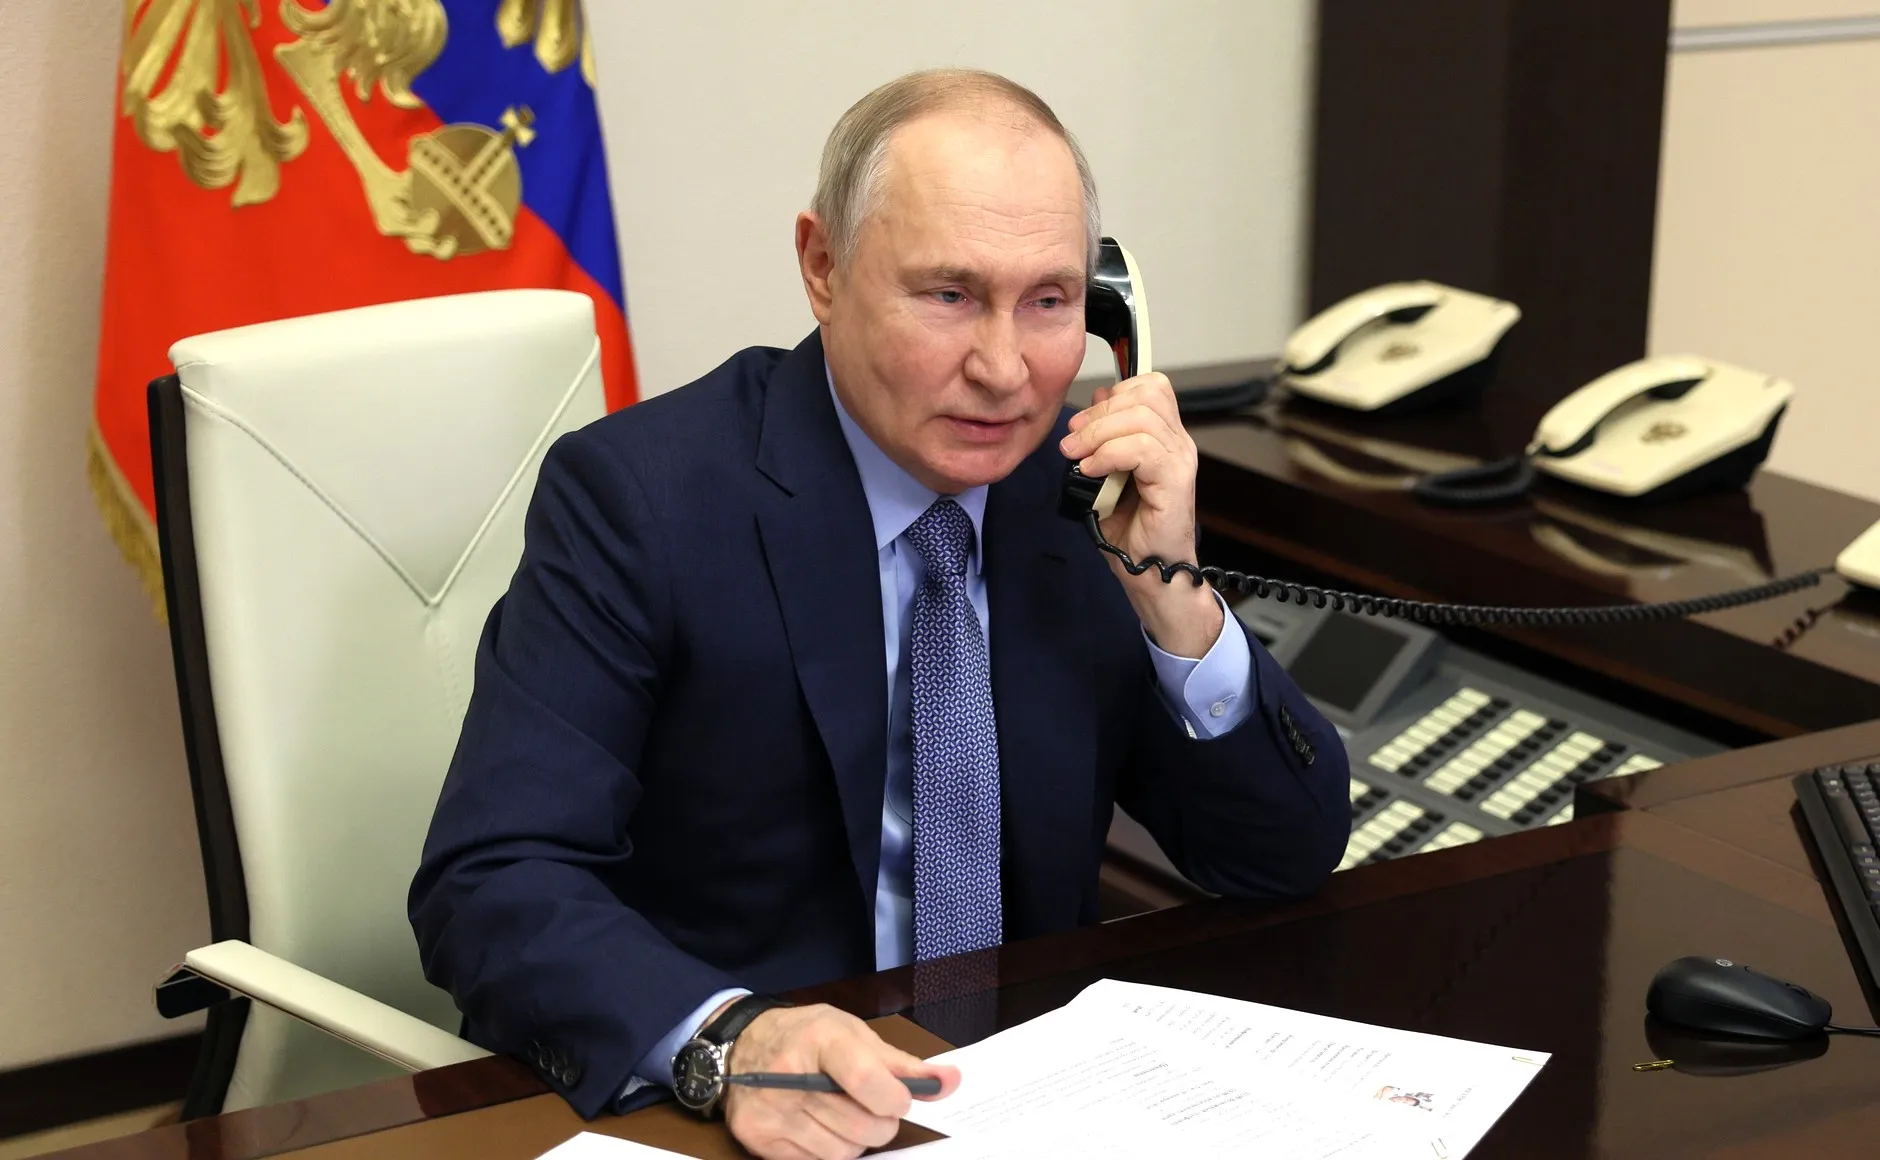 "Абсолютный трудоголик": Путин заканчивает работать глубокой ночью, рассказал Песков